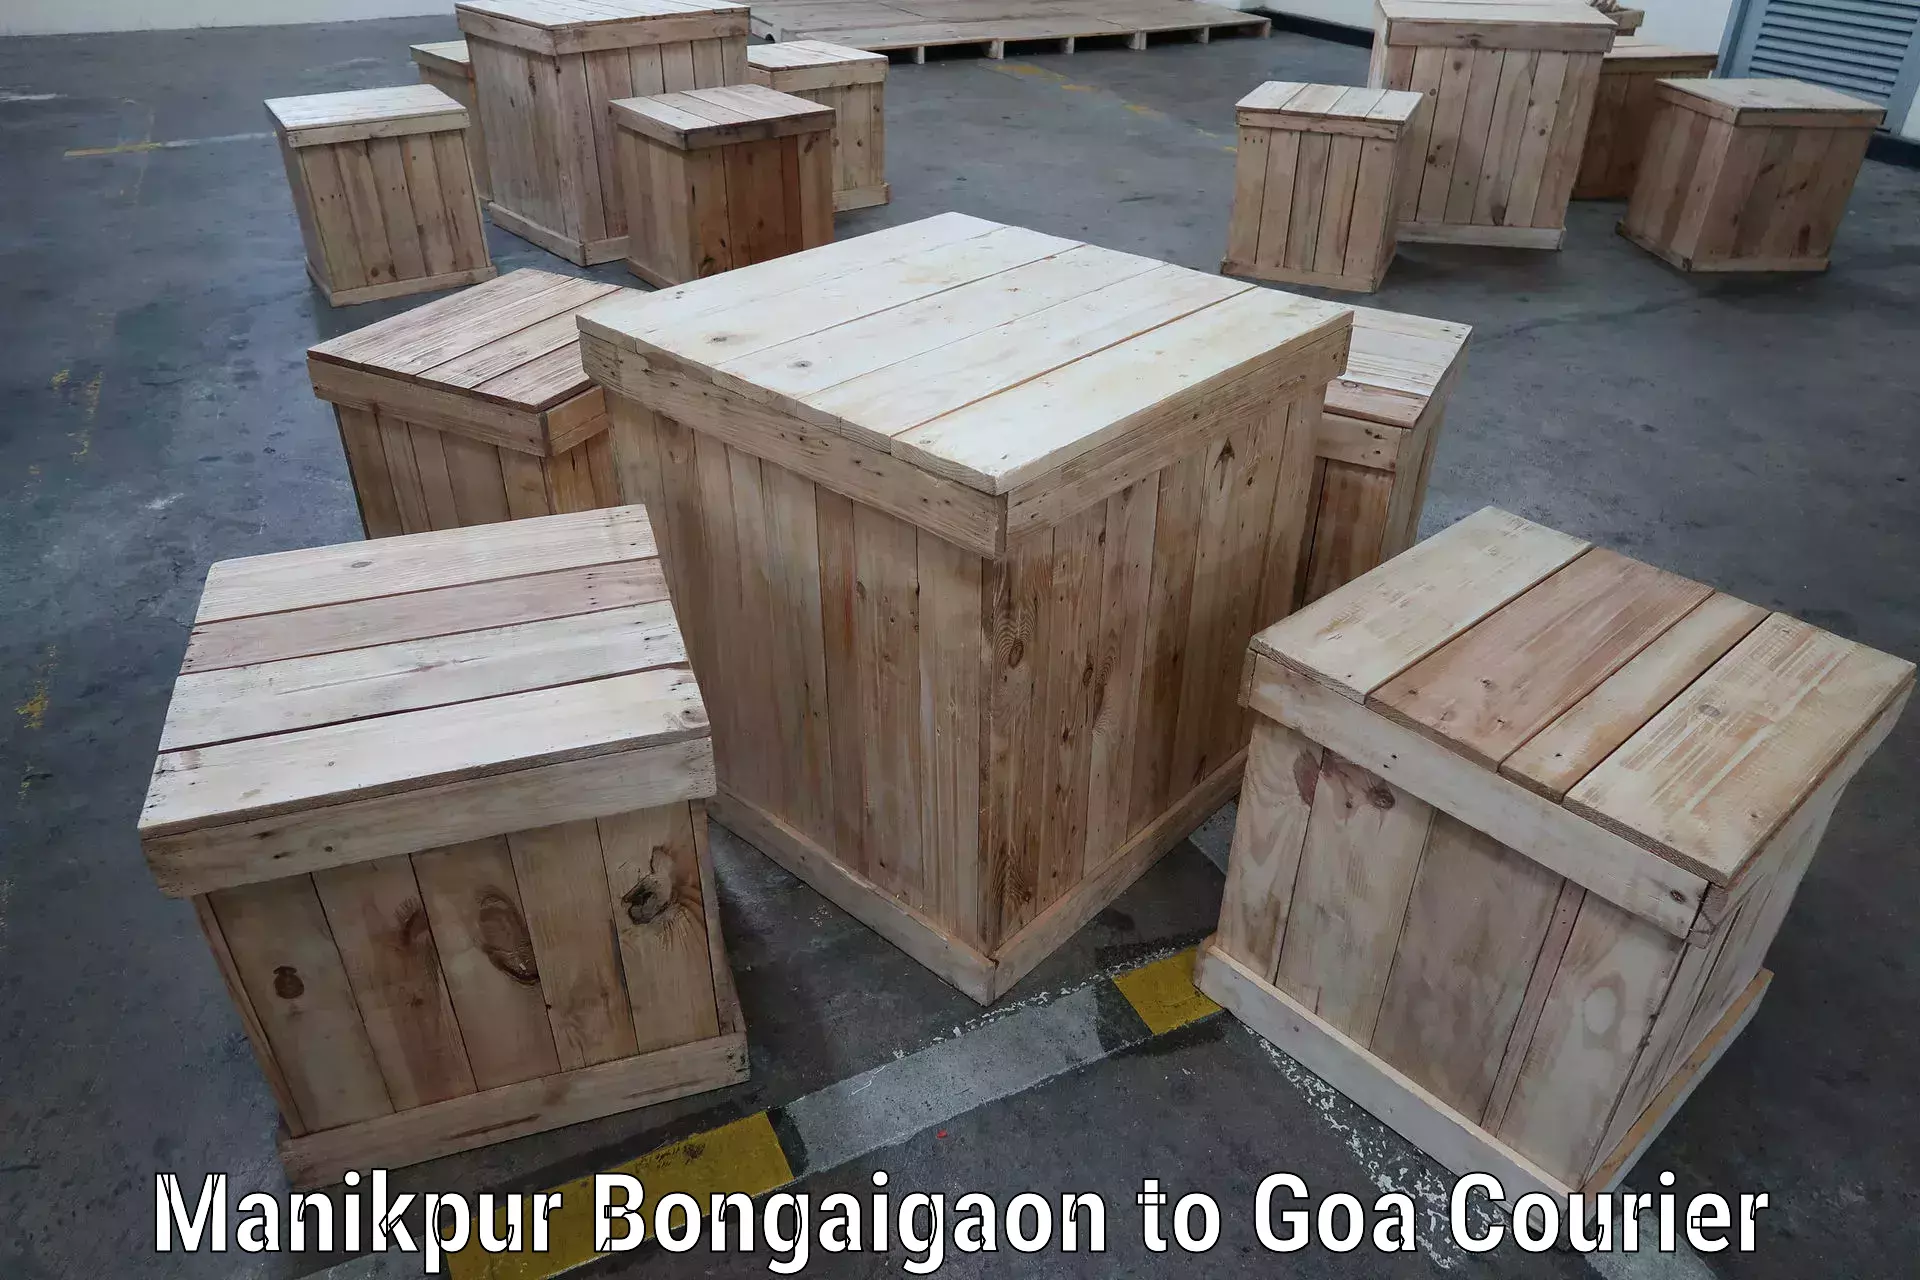 Next day courier Manikpur Bongaigaon to Goa